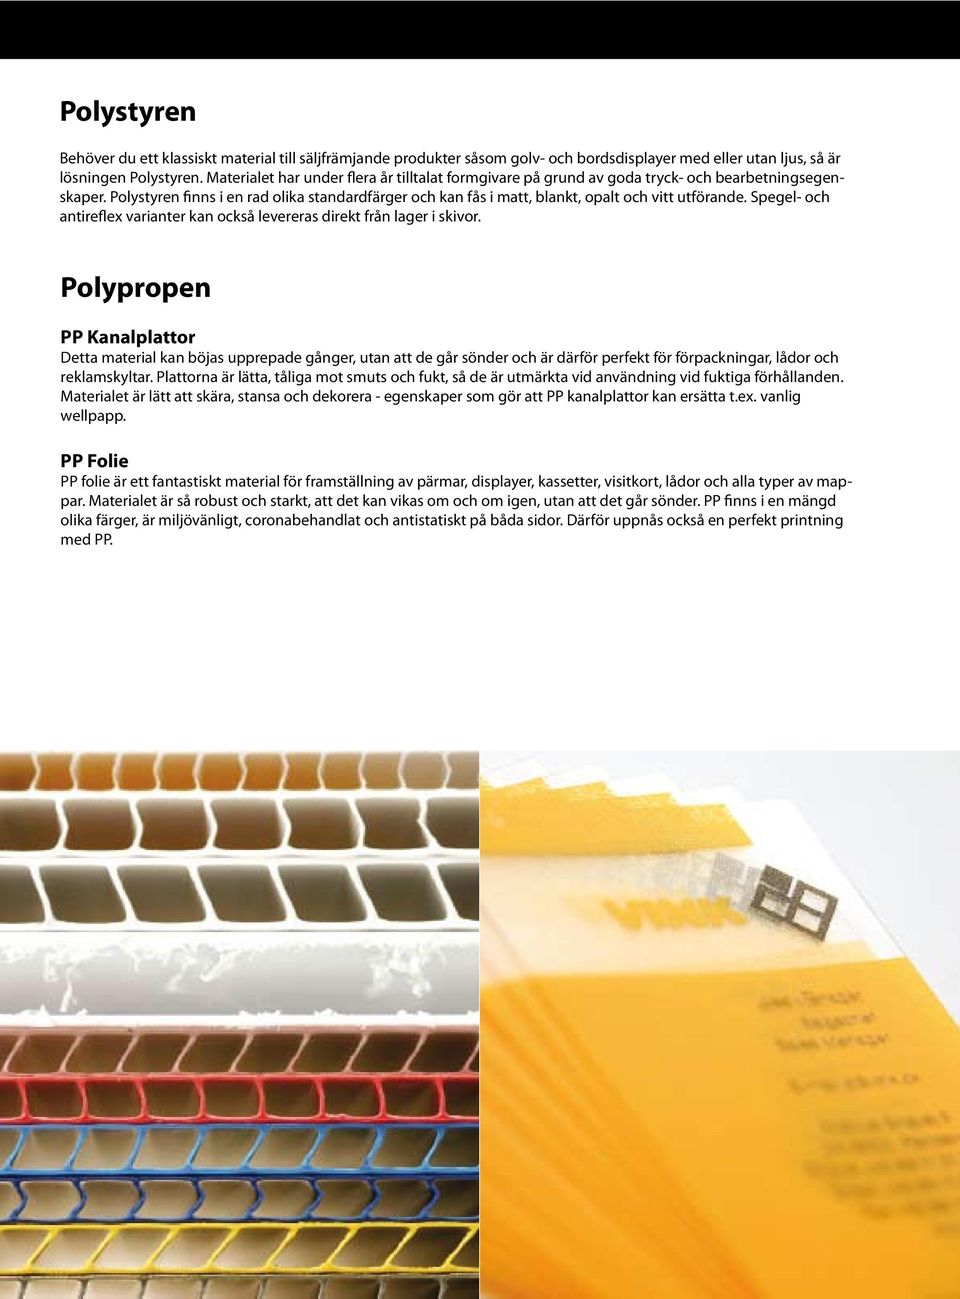 Polystyren finns i en rad olika standardfärger och kan fås i matt, blankt, opalt och vitt utförande. Spegel- och antireflex varianter kan också levereras direkt från lager i skivor.